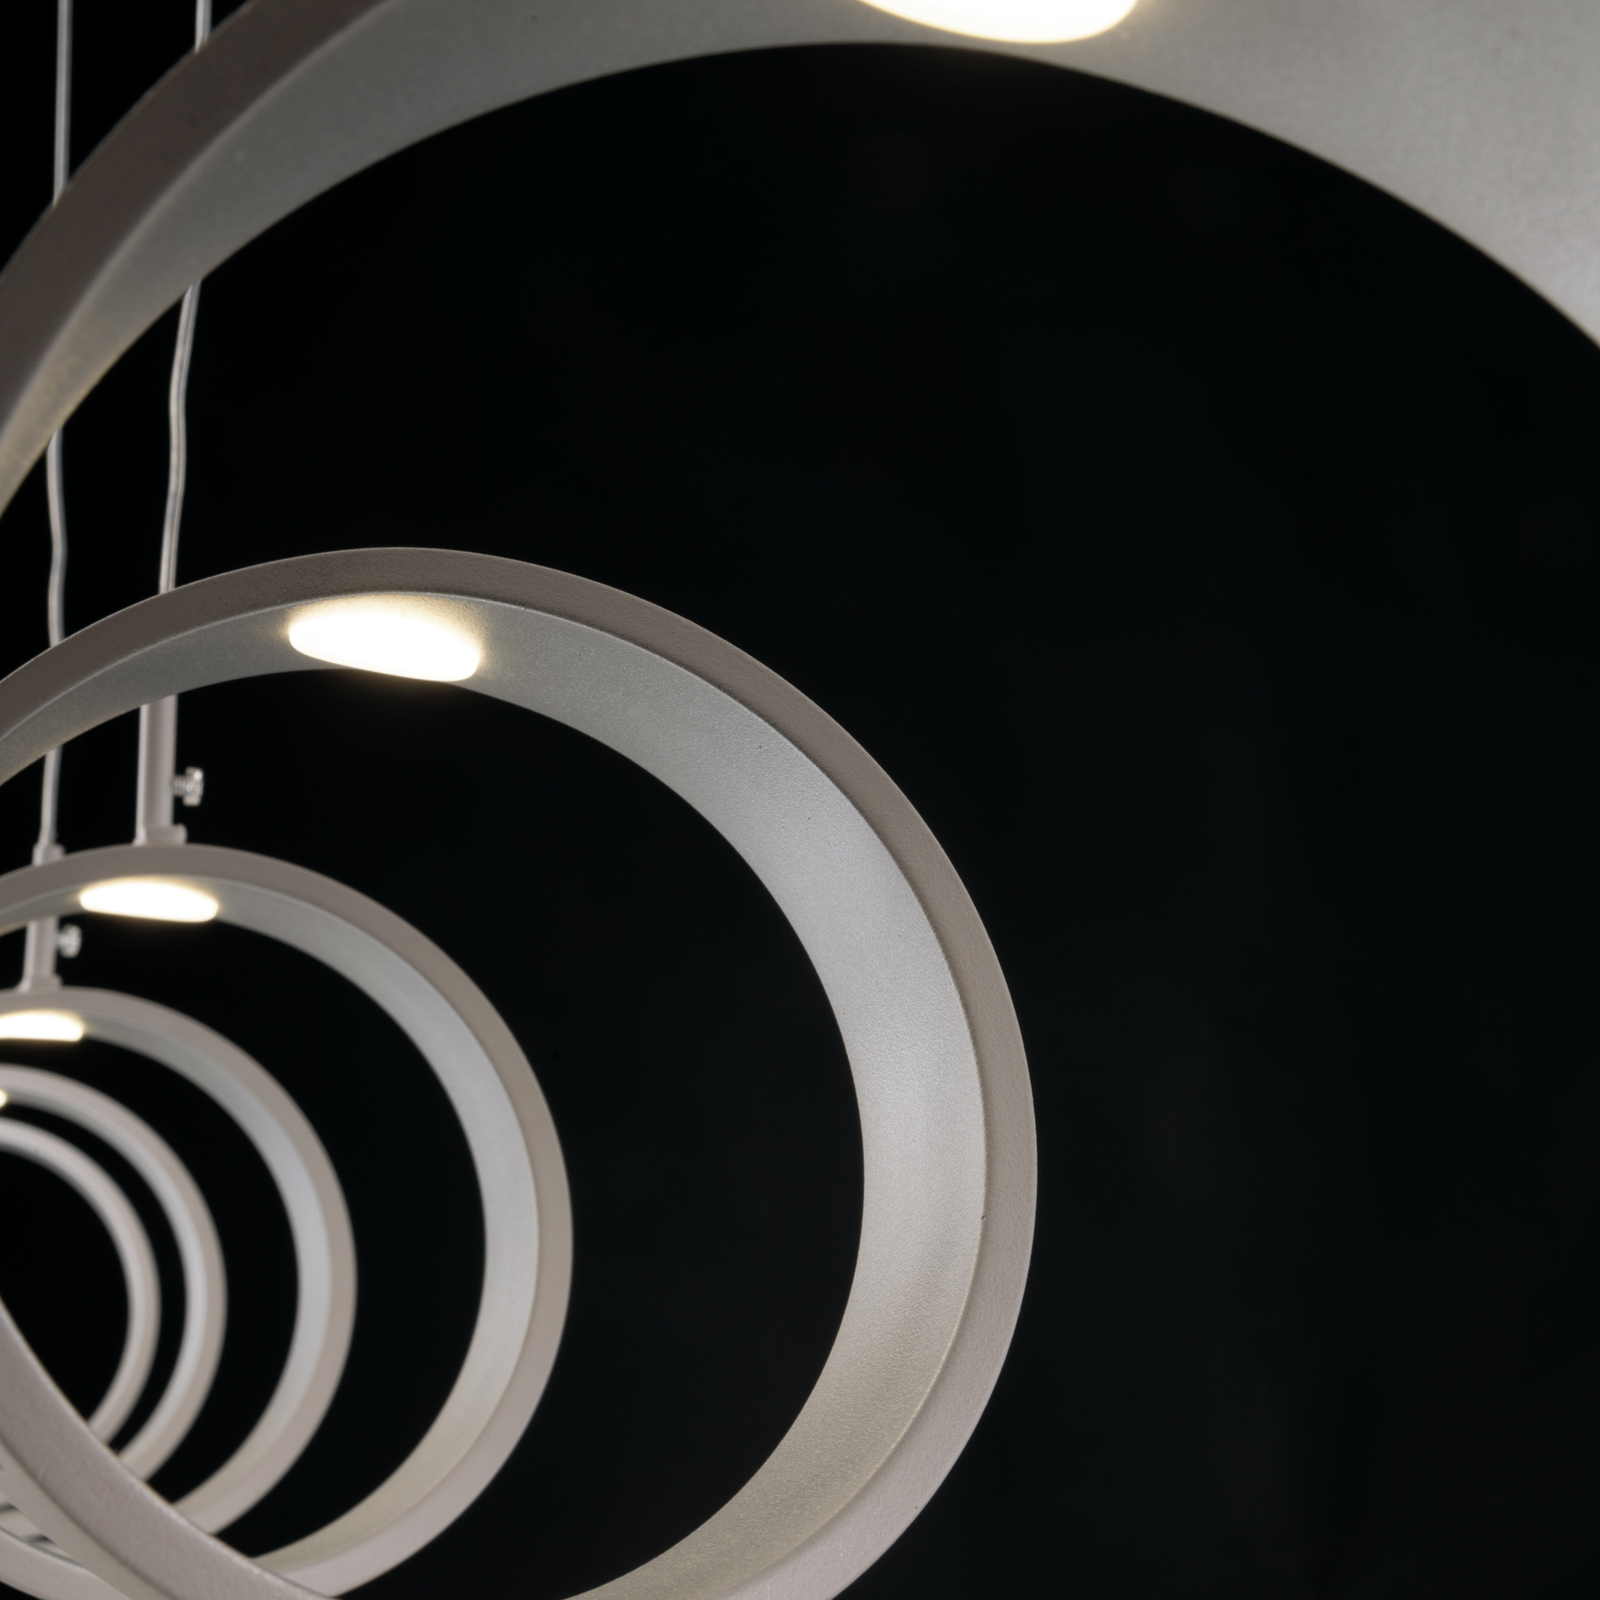 Suspension LED Helix, blanche-argentée, 125 cm